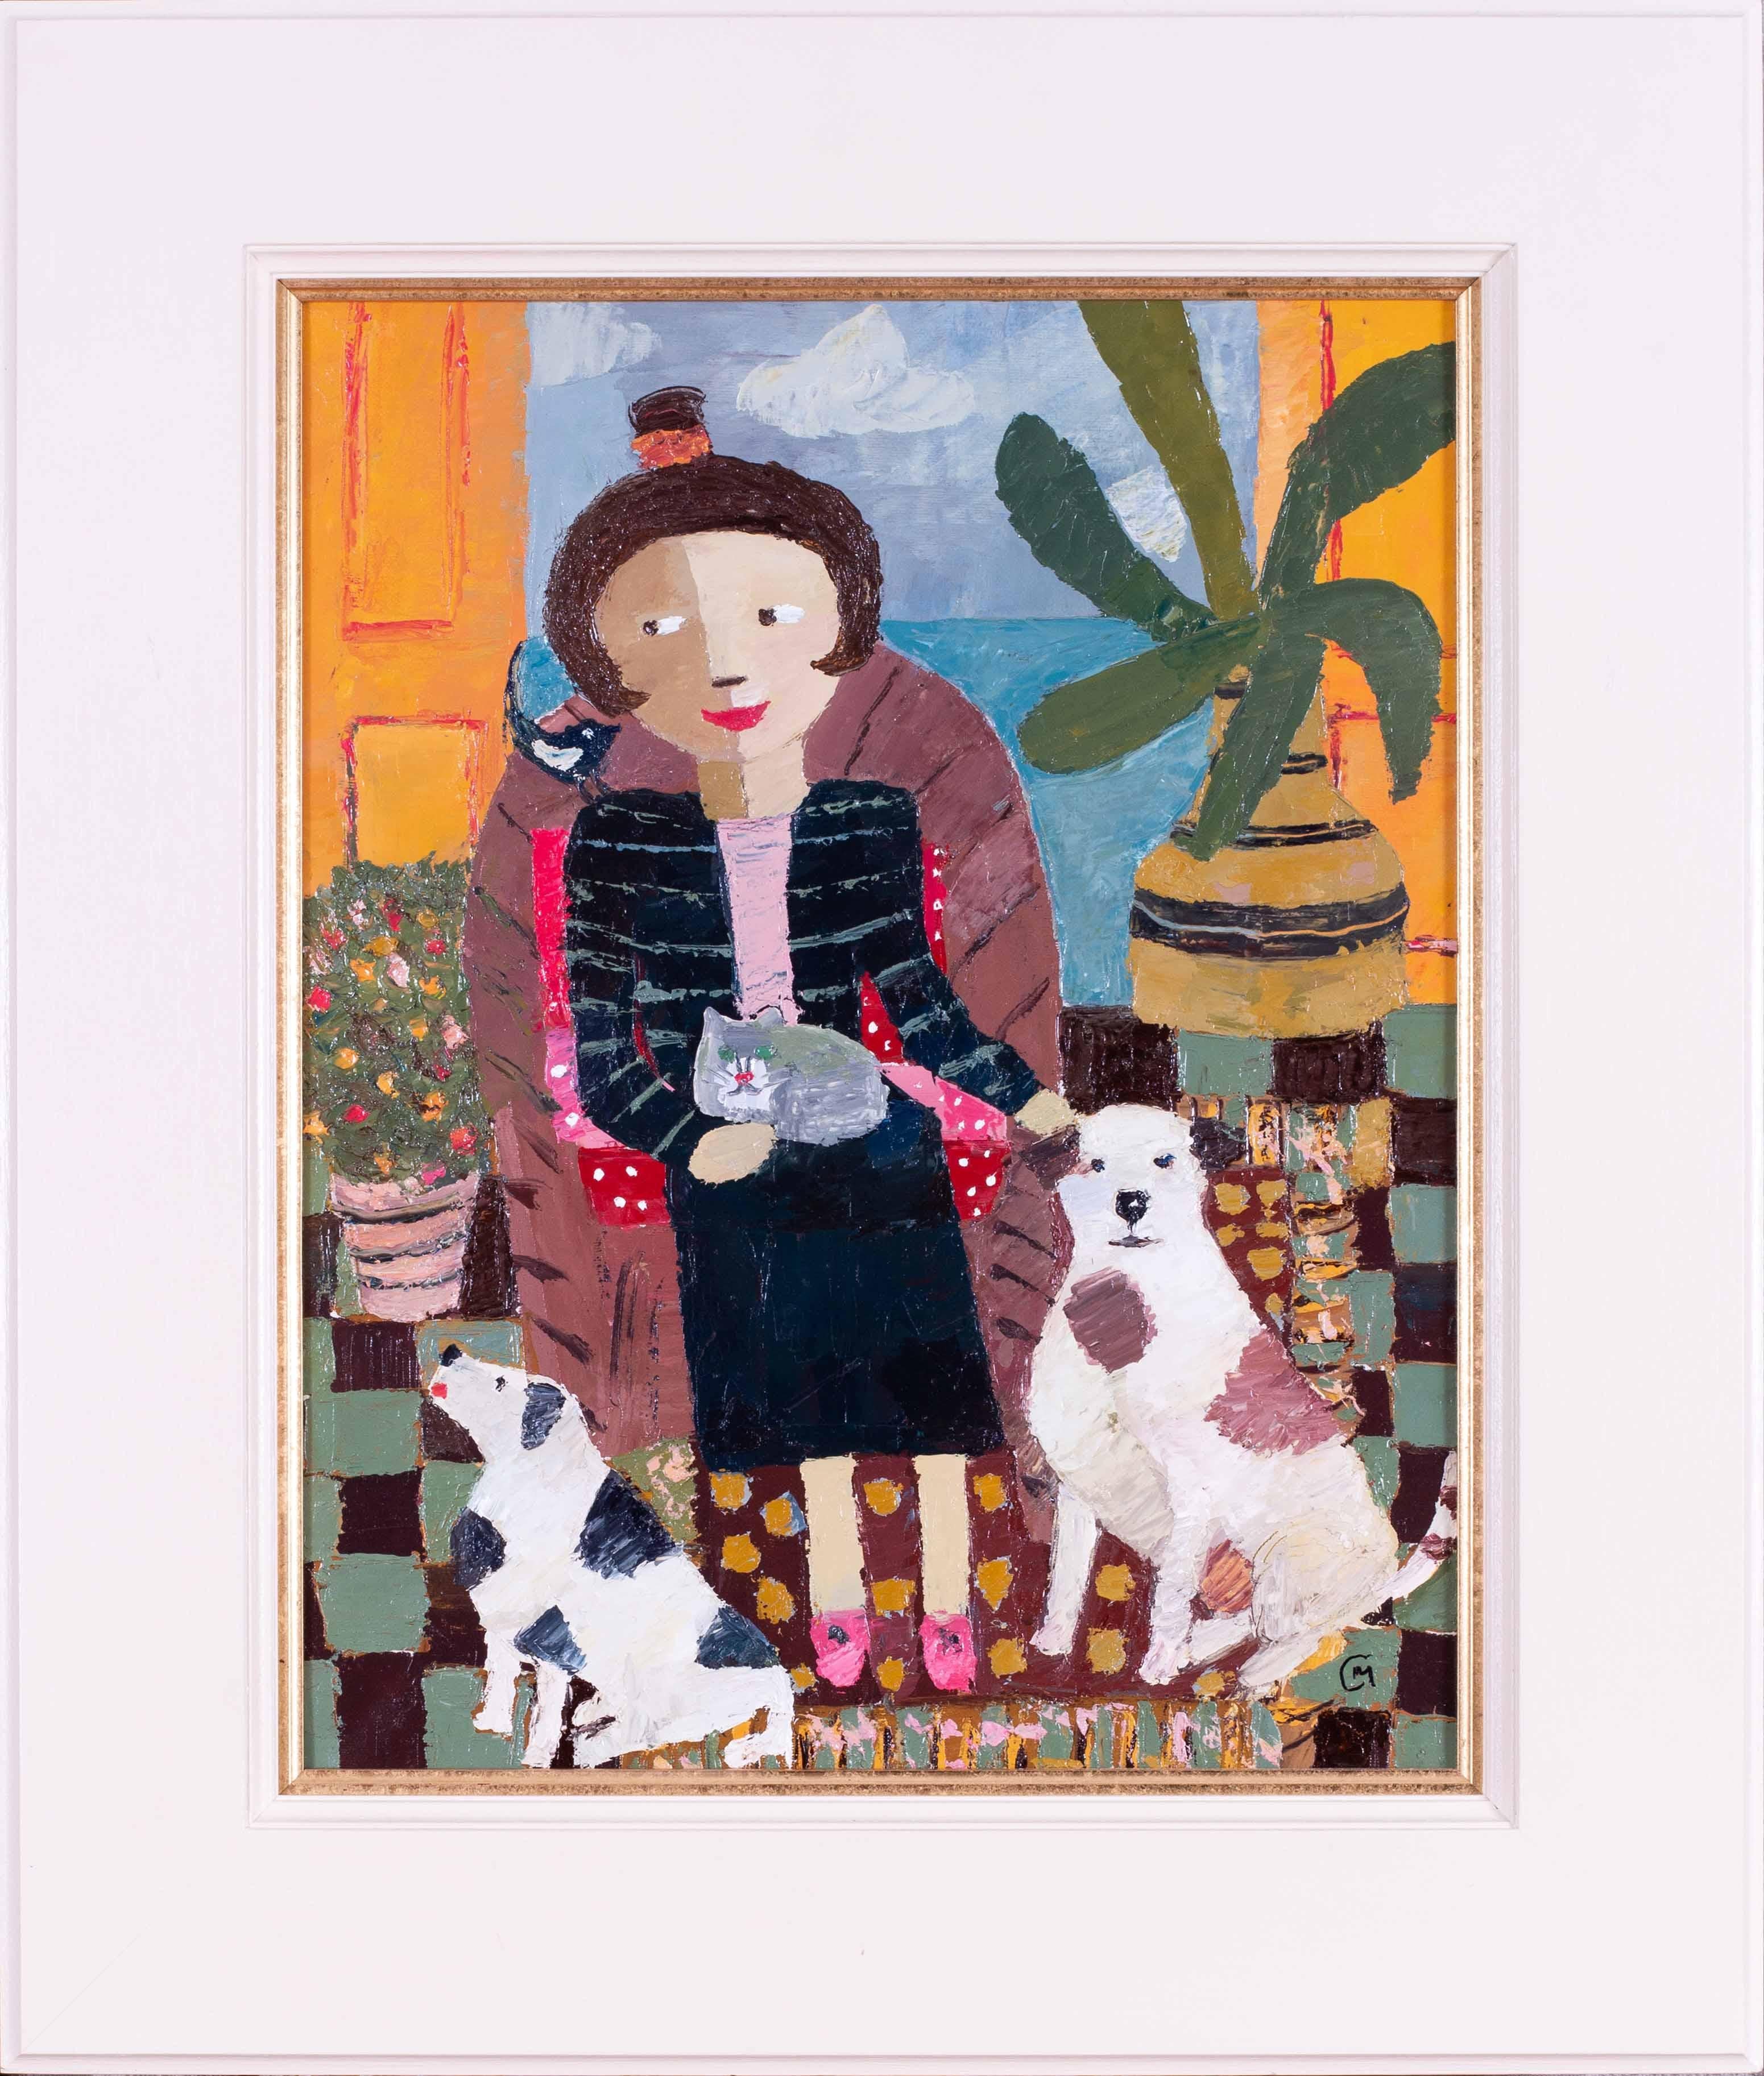 Animal Painting Catriona Millar - Peinture à l'huile écossaise du 20e siècle représentant des personnages, des chiens et des oiseaux à l'intérieur